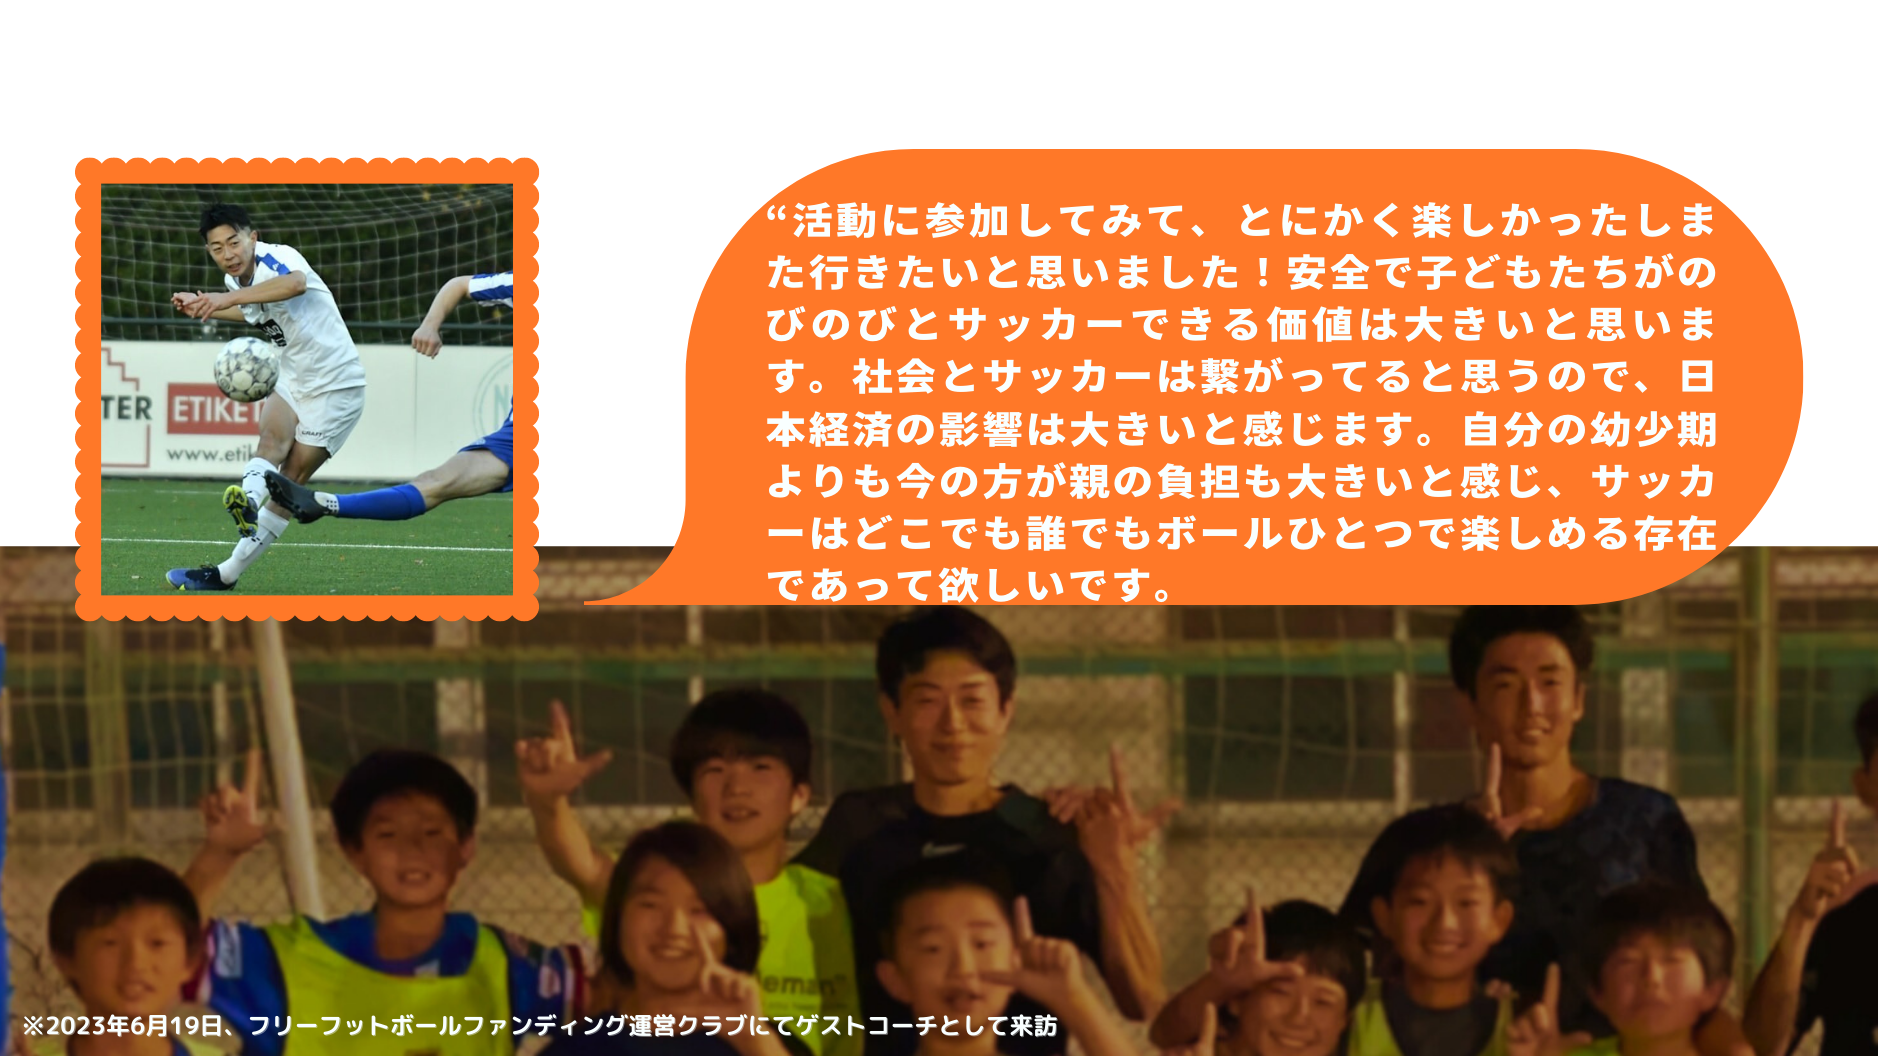 “活動に参加してみて、とにかく楽しかったしまた行きたいと思いました！安全で子どもたちがのびのびとサッカーできる価値は大きいと思います。社会とサッカーは繋がってると思うので、日本経済の影響は大きいと感じます。自分の幼少期よりも今の方が親の負担も大きいと感じ、サッカーはどこでも誰でもボールひとつで楽しめる存在であって欲しいです。